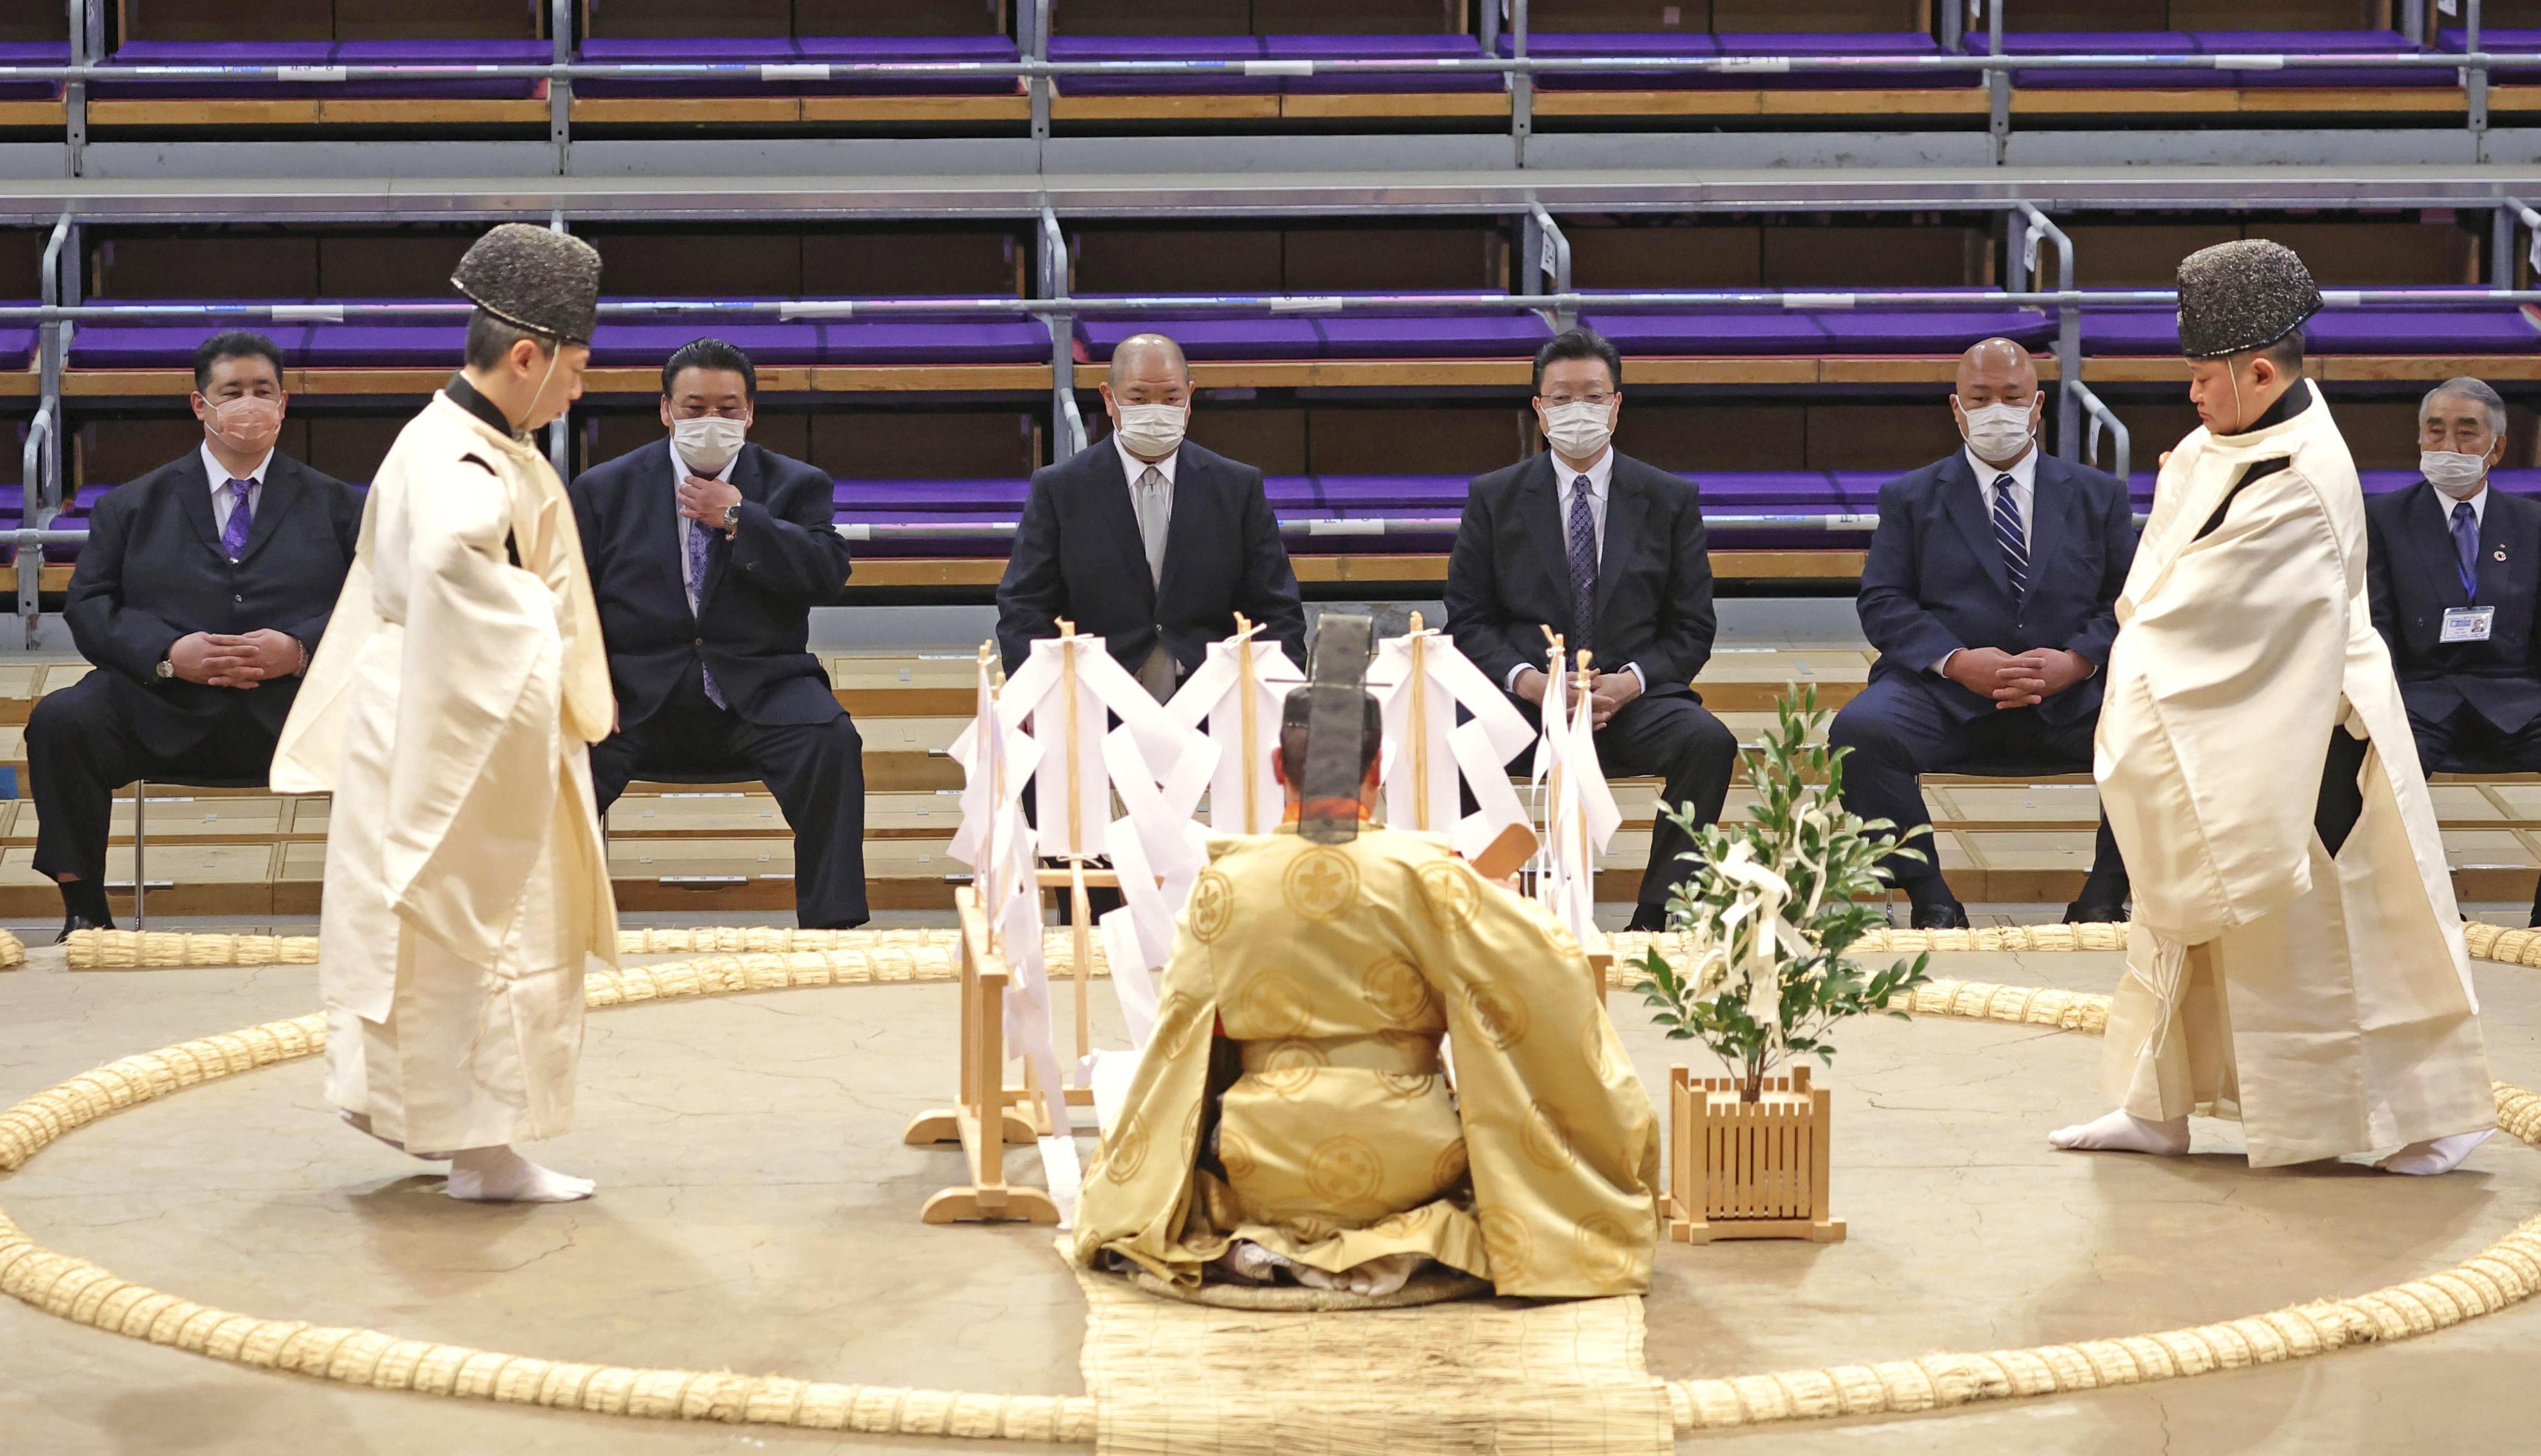 大相撲九州場所の土俵祭り開催 １３日初日、安全を祈願 - 産経ニュース